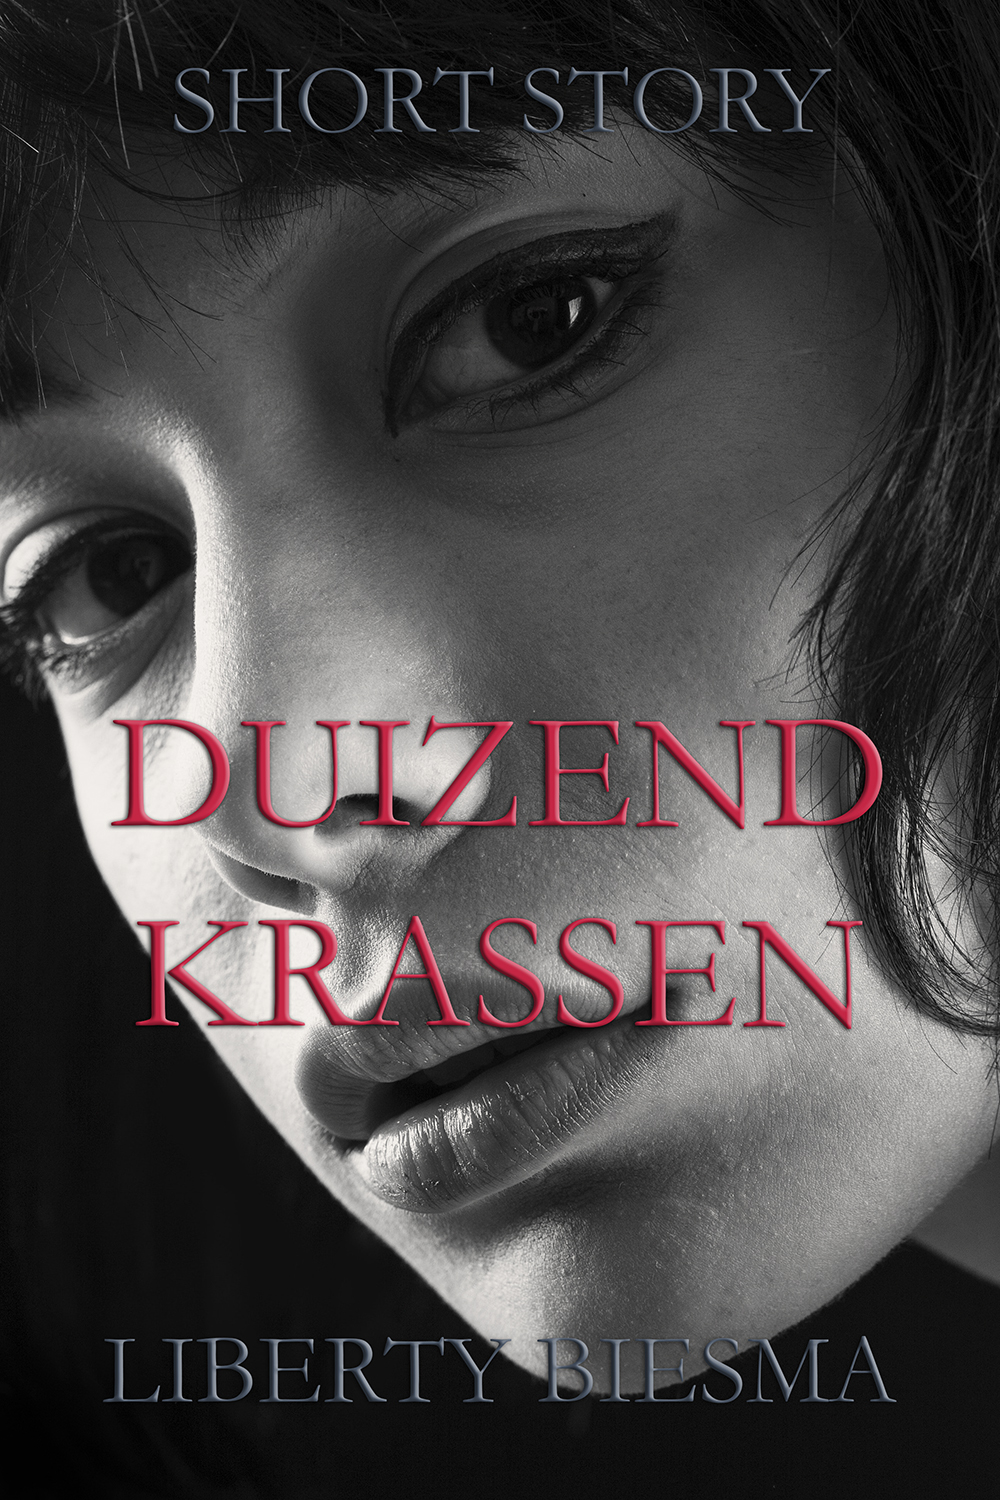 Duizend Krassen - A short story by Liberty Biesma